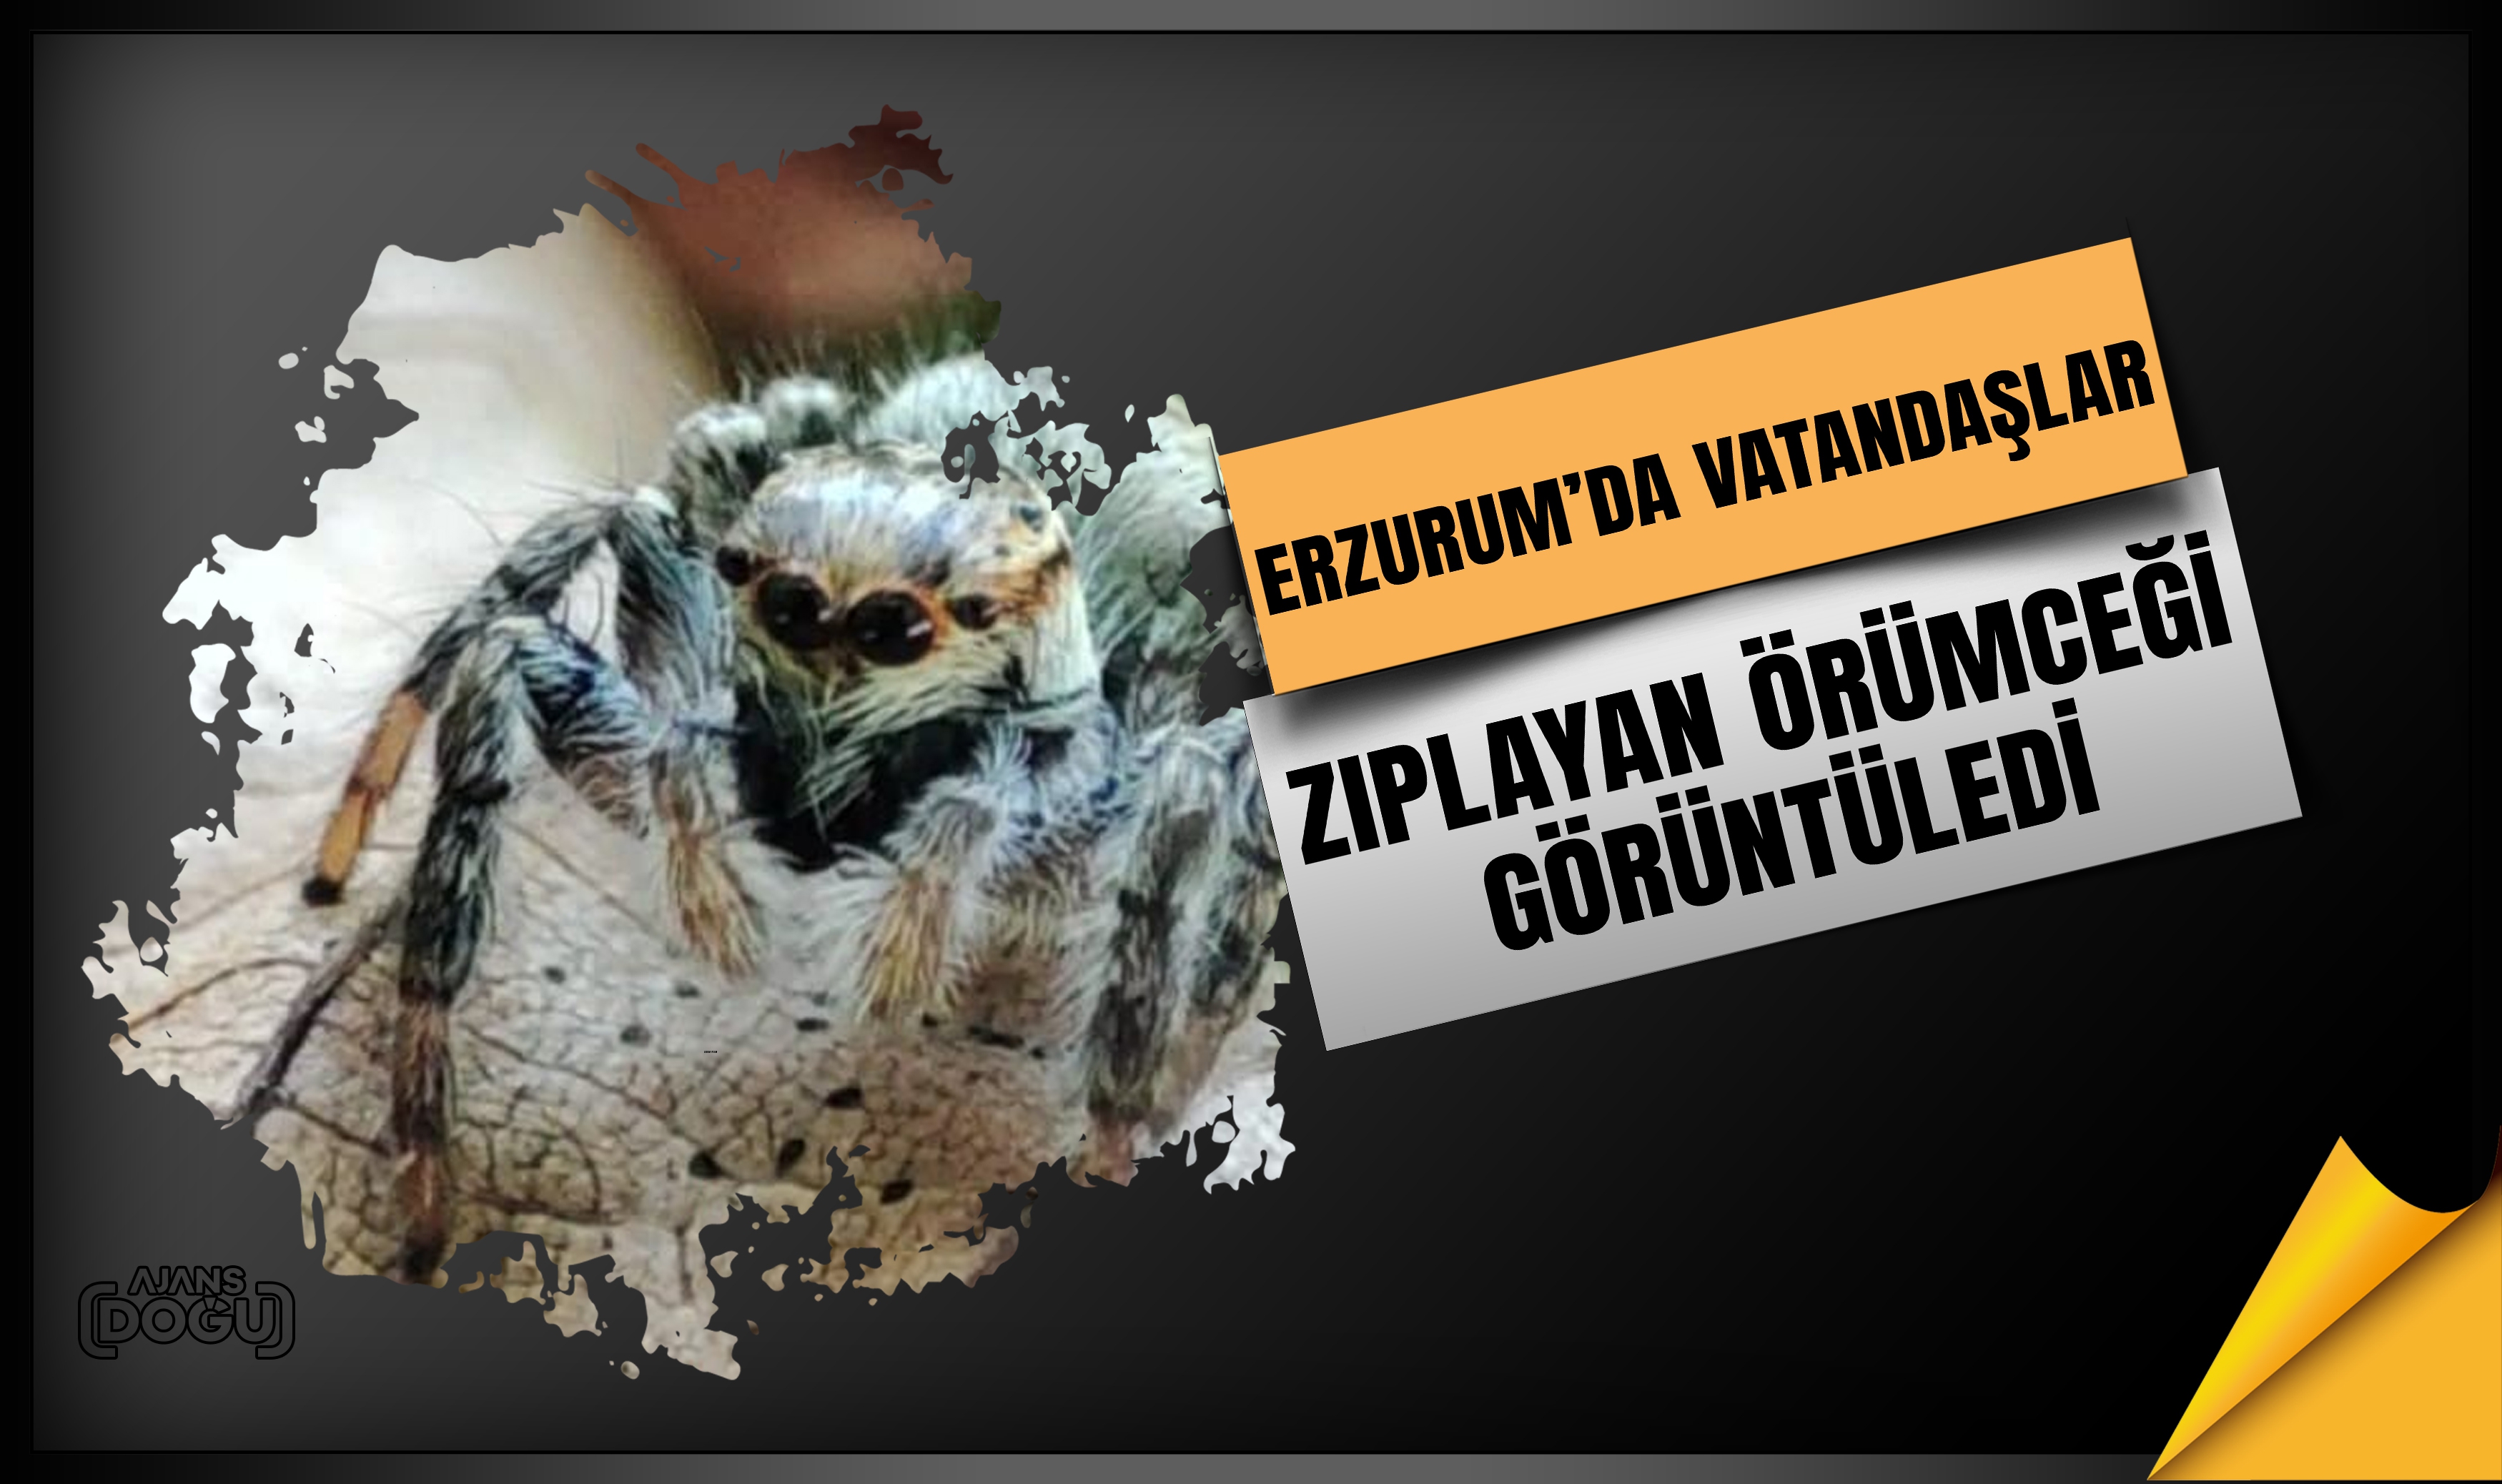 Erzurum’da vatandaşlar zıplayan örümceği görüntüledi